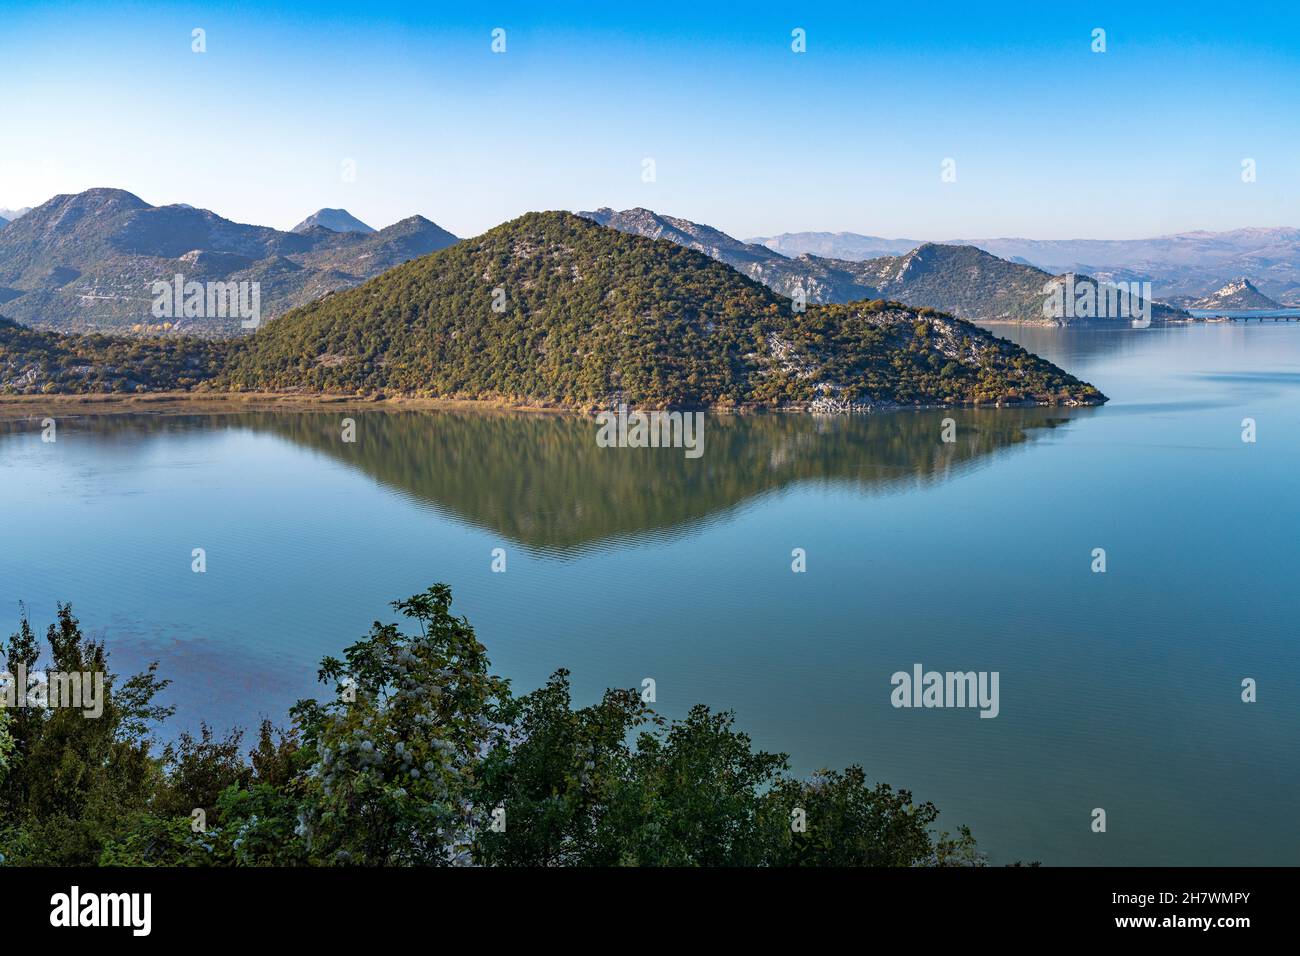 Blick über den Skutarisee, Montenegro, Europa  |  Skadar lake view, Montenegro, Europe Stock Photo